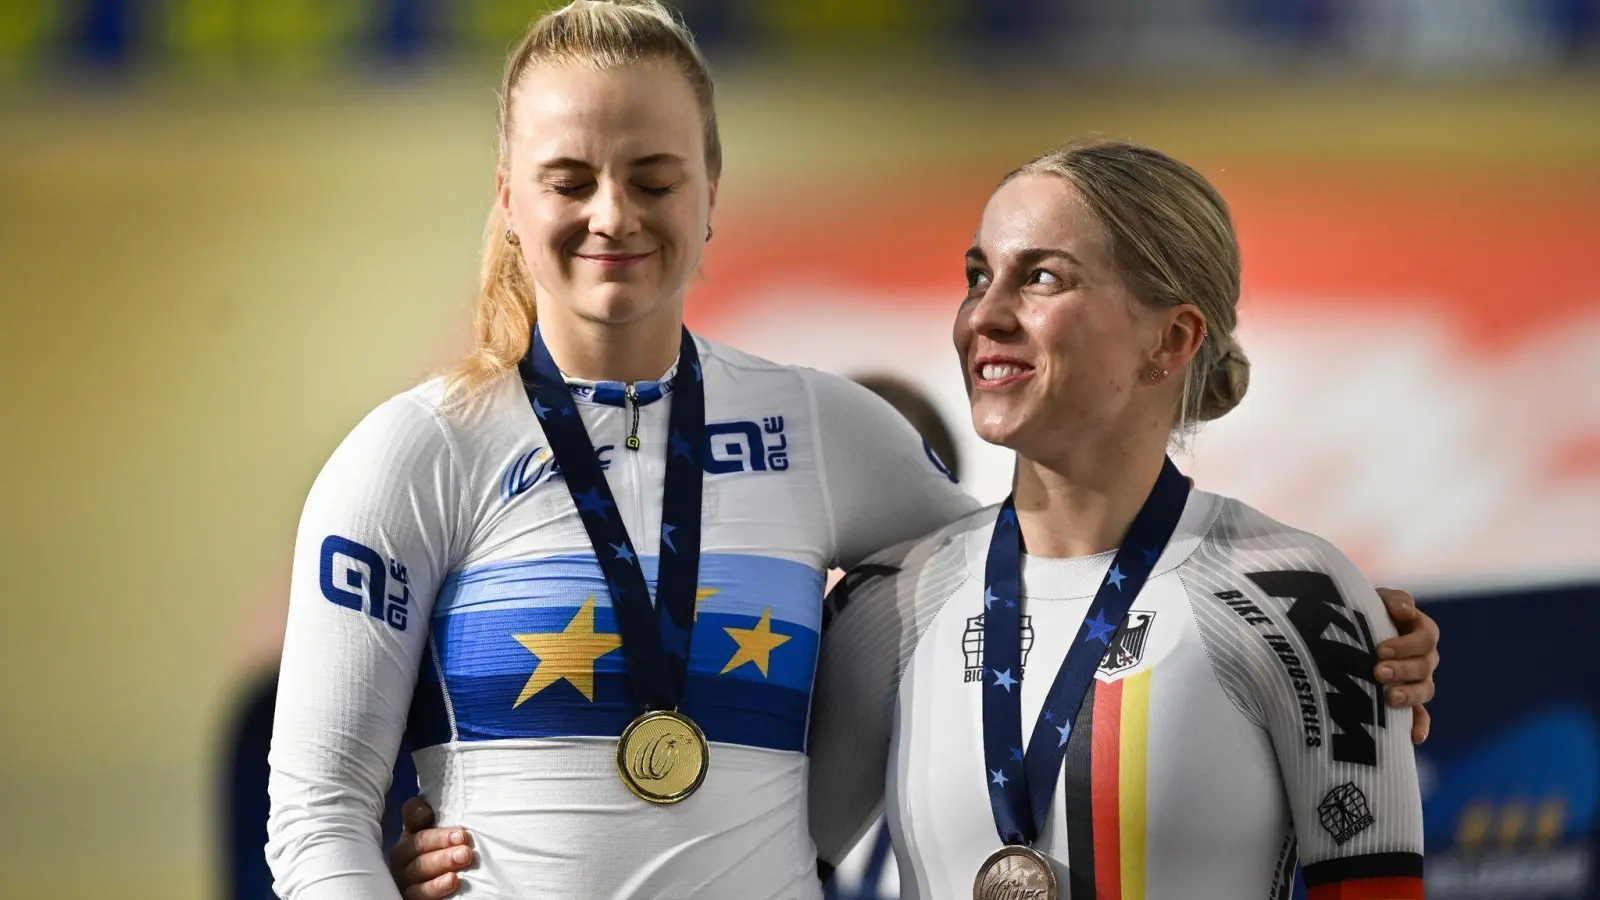 Die beiden Sprinterinnen gehören bei der WM in Glasgow zu den größten deutschen Medaillenanwärterinnen. (Foto: Gian Ehrenzeller/KEYSTONE/dpa)